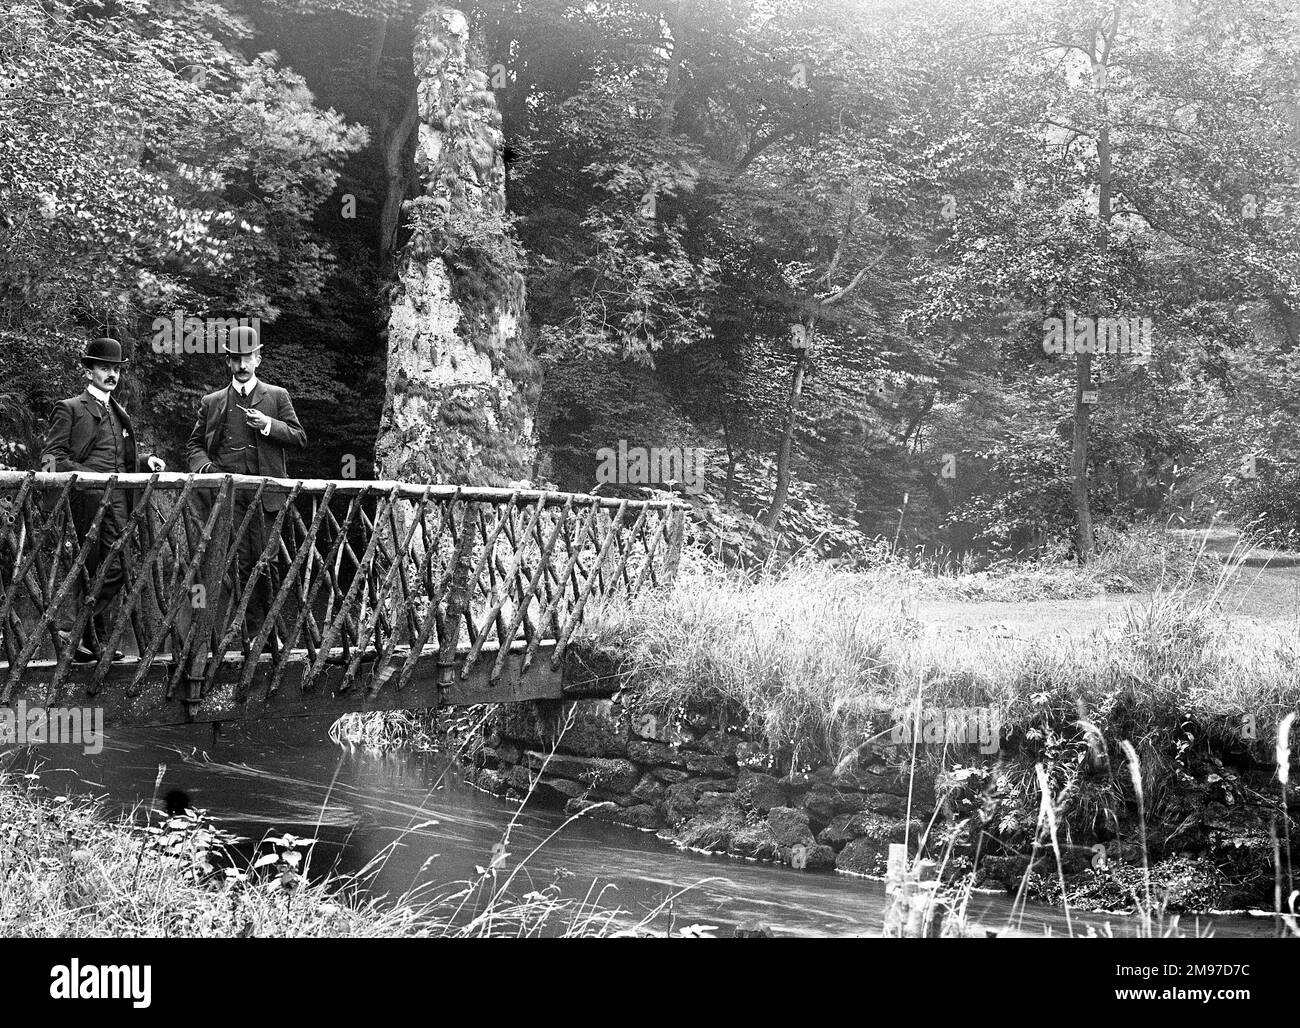 Der Mann auf der rechten Seite der Brücke ist Ernest Battersby - fotografiert im Peak District um 1906. Neben ihm ist ein Mann, identifiziert als Ted Ellis. Stockfoto